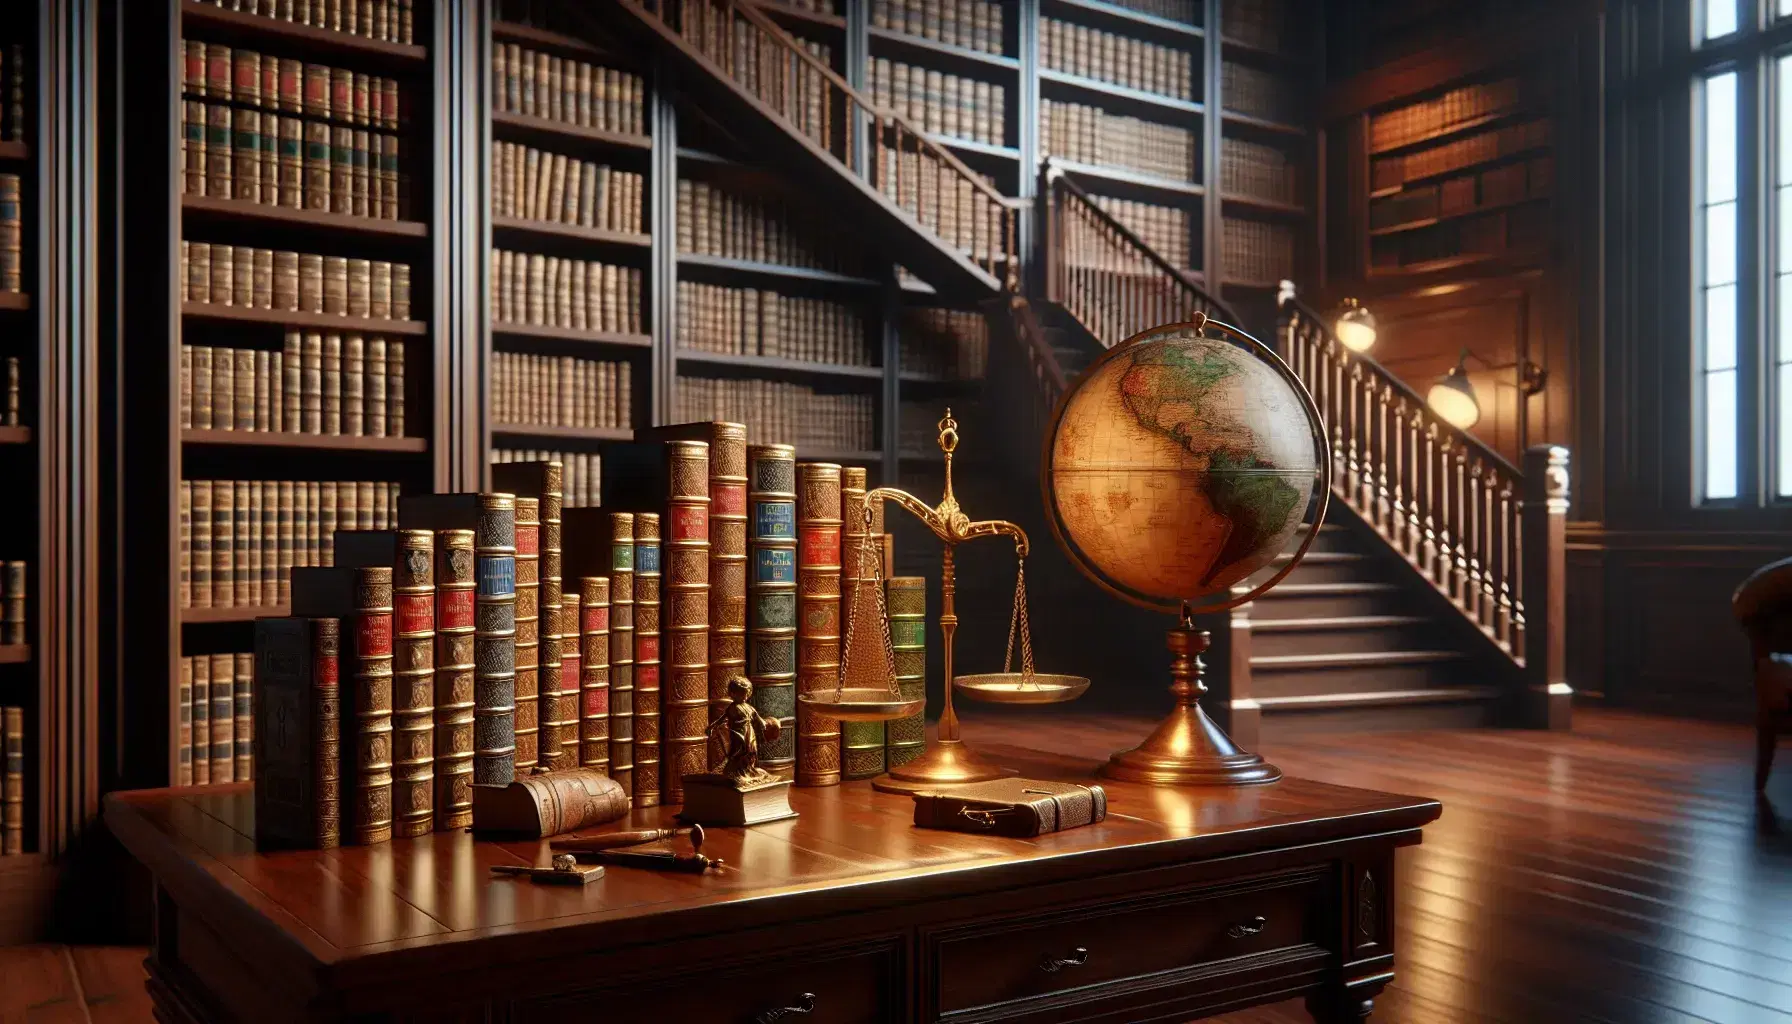 Biblioteca clásica con estanterías de madera oscura llenas de libros encuadernados en cuero, globo antiguo y balanza de bronce sobre mesa, iluminados por lámpara de pie.